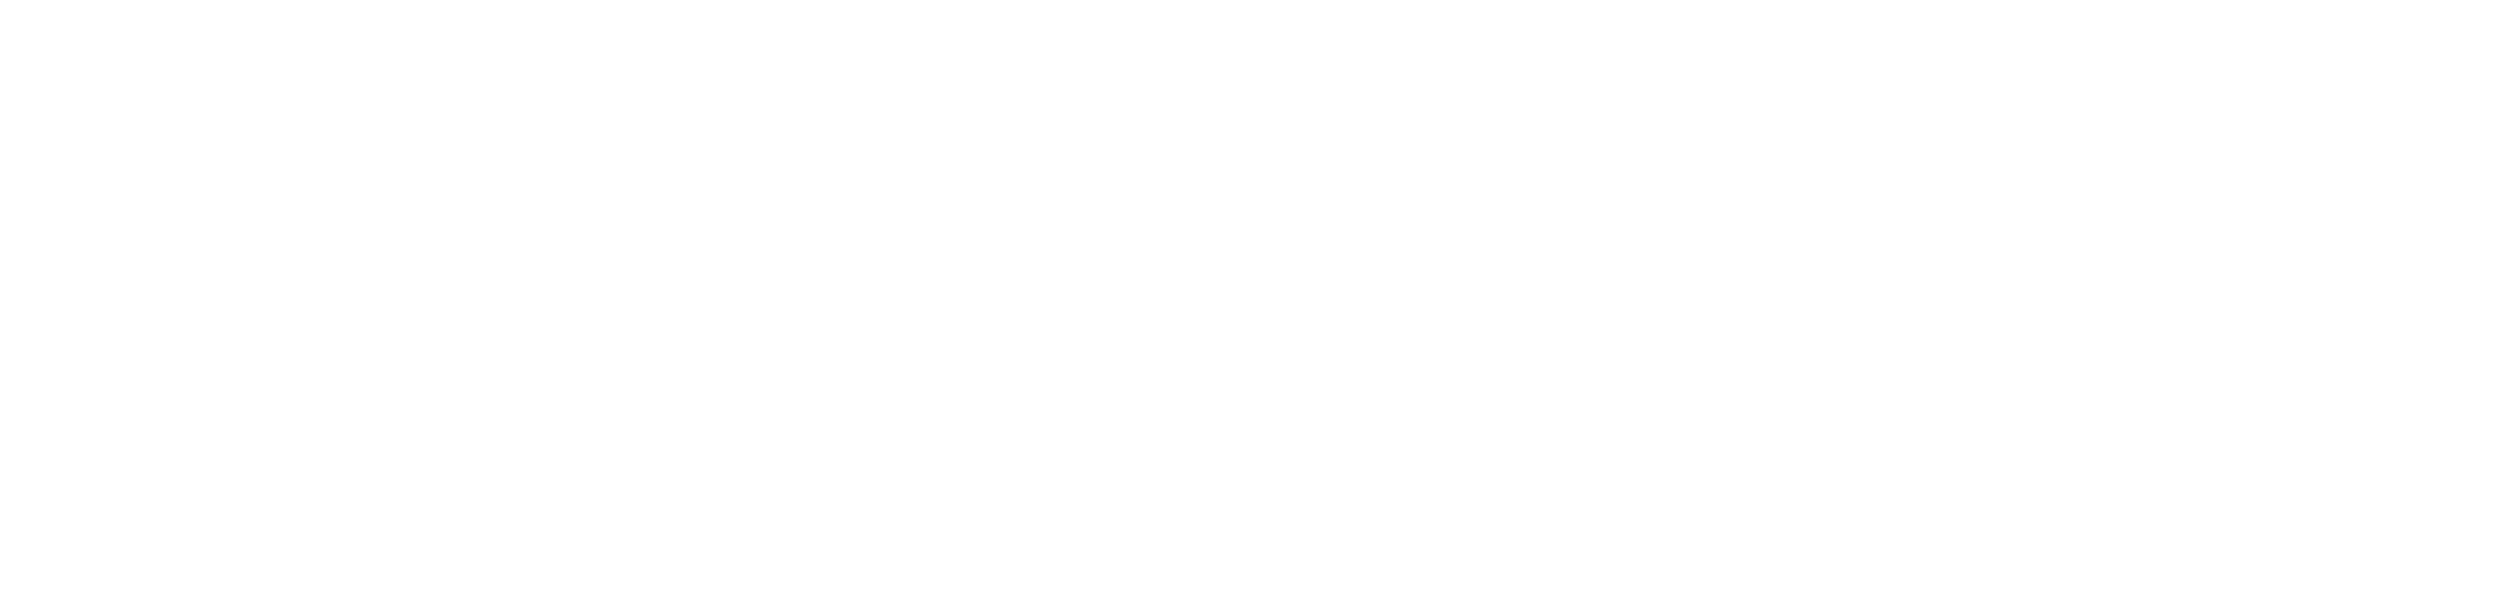 Natasha Barnes